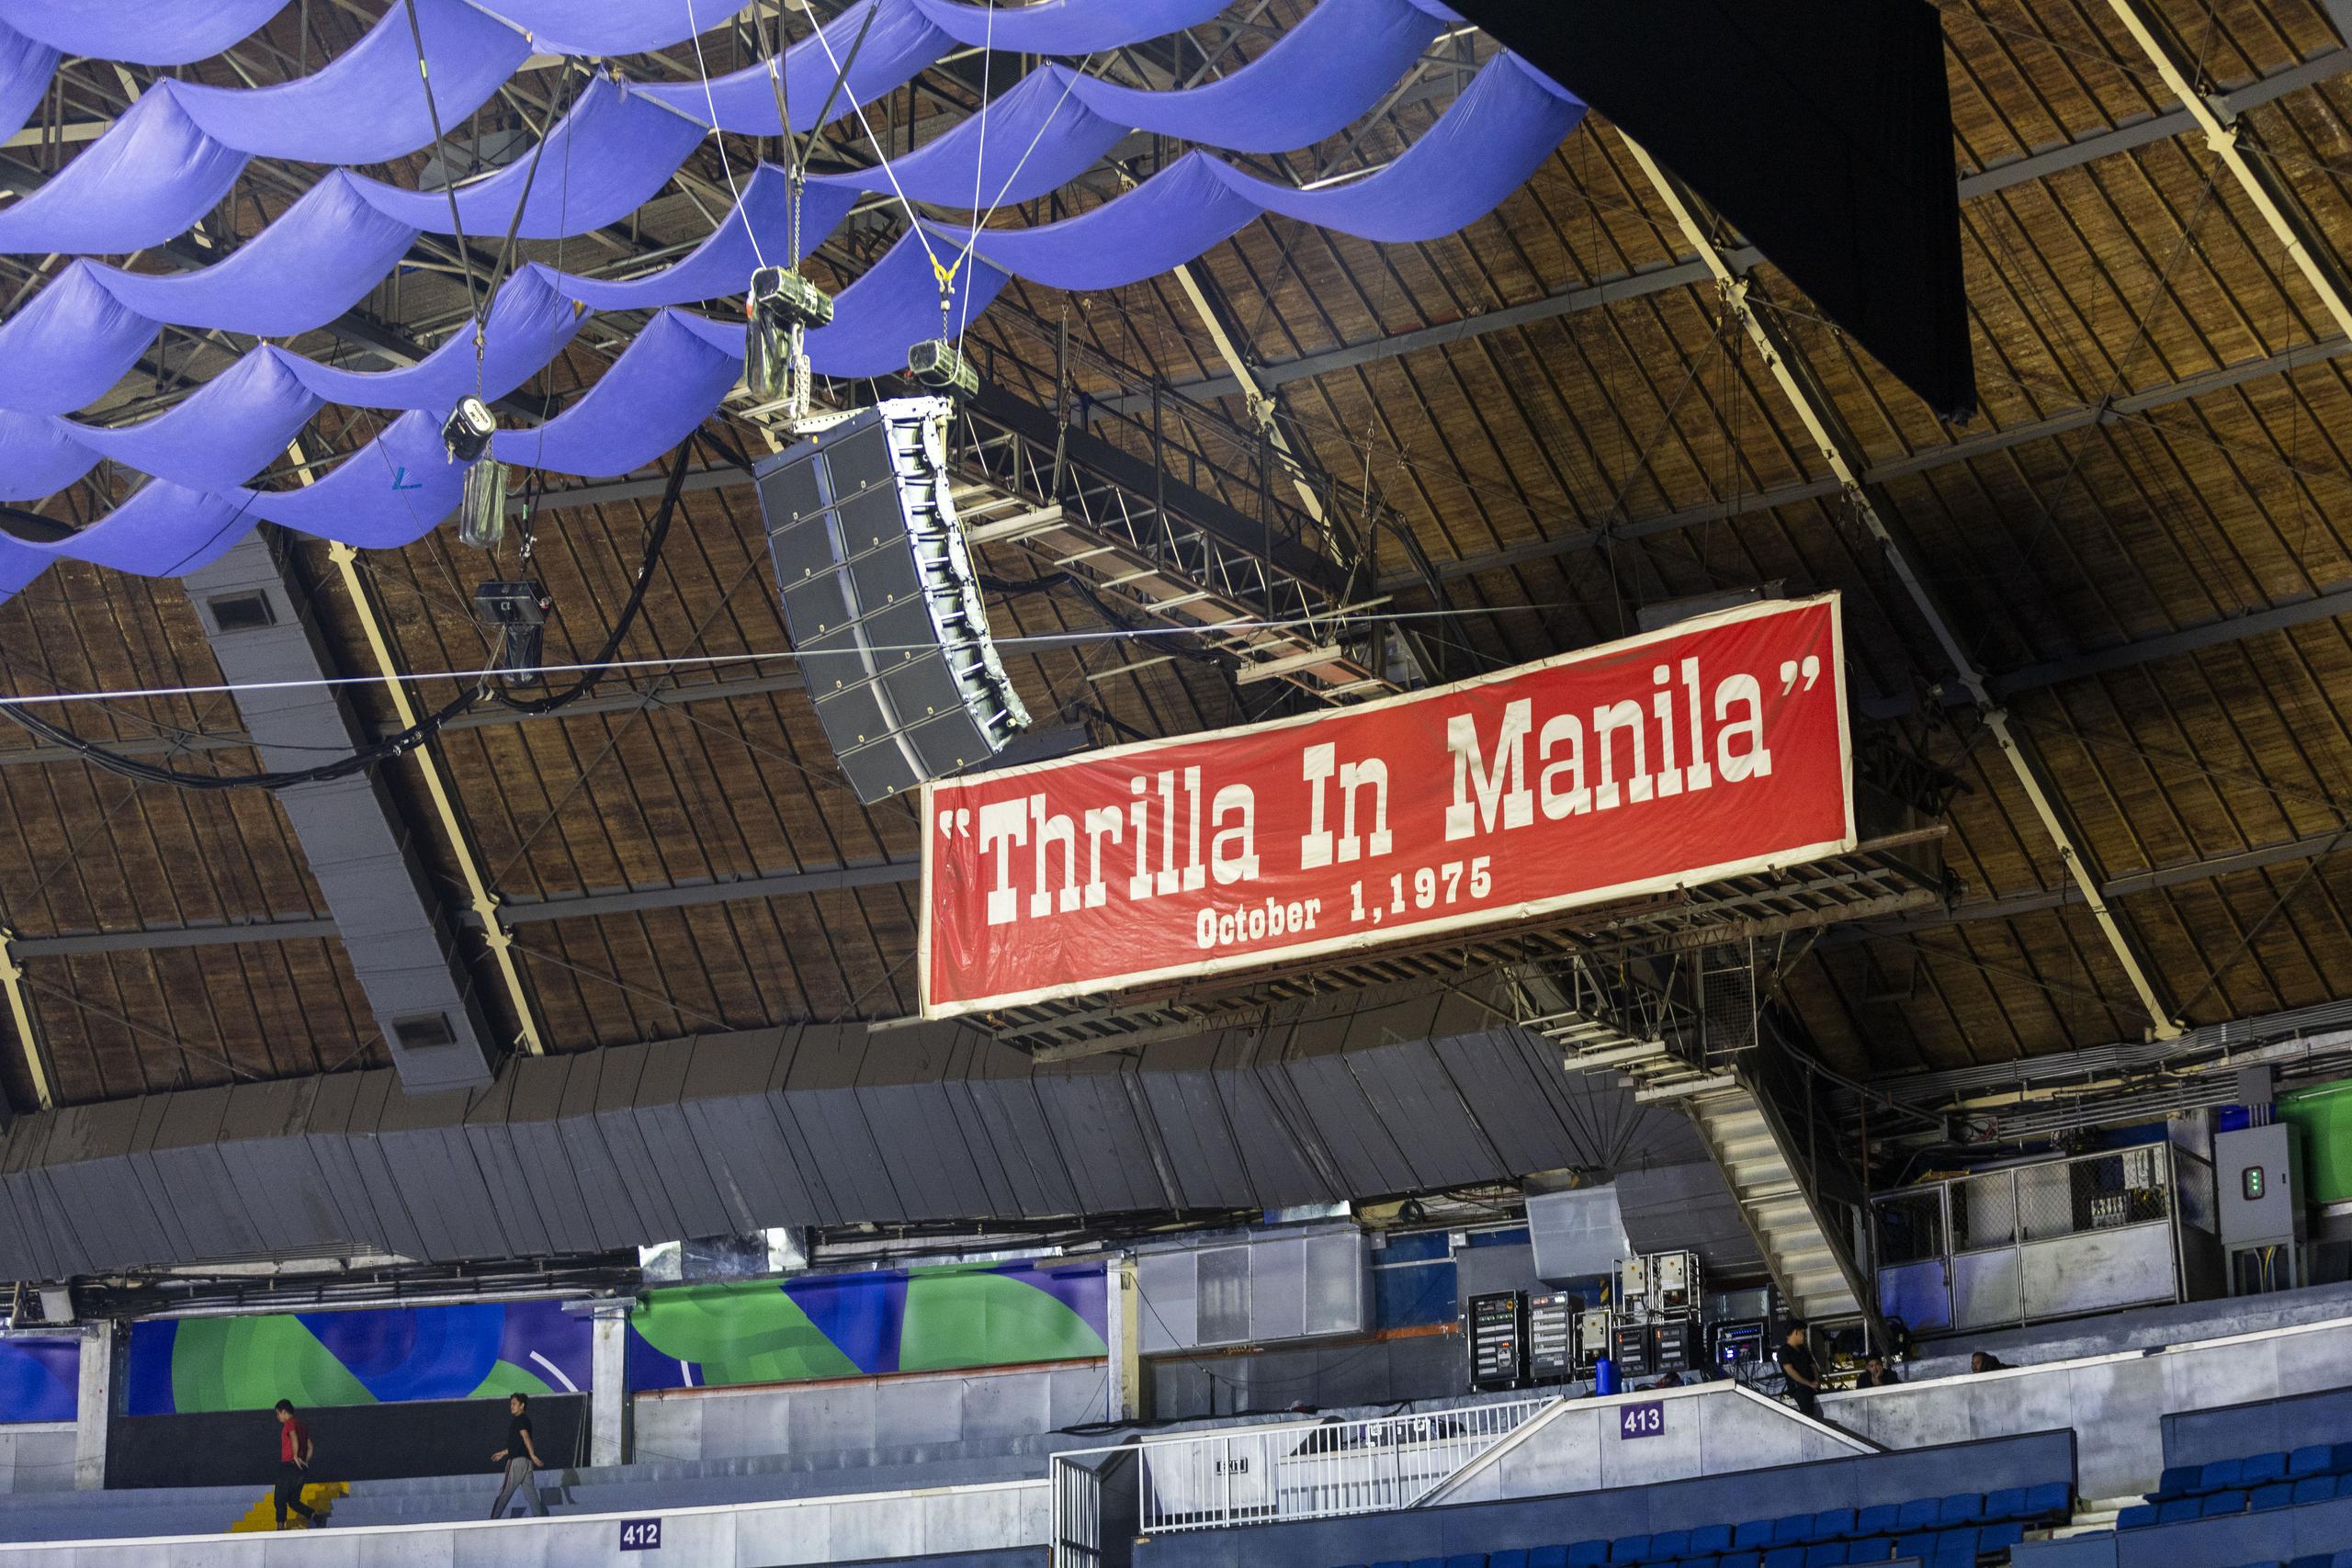 La acción del Grupo B en el que juega Puerto Rico se realizará en el Smart Araneta Coliseum, centro en el que se realizó la final del Mundial FIBA del 1978, y la legendaria tercera pelea entre Muhamad Ali y Joe Frazier, bautizada como la “Thrilla in Manila” el 1 de octubre  de 1976.